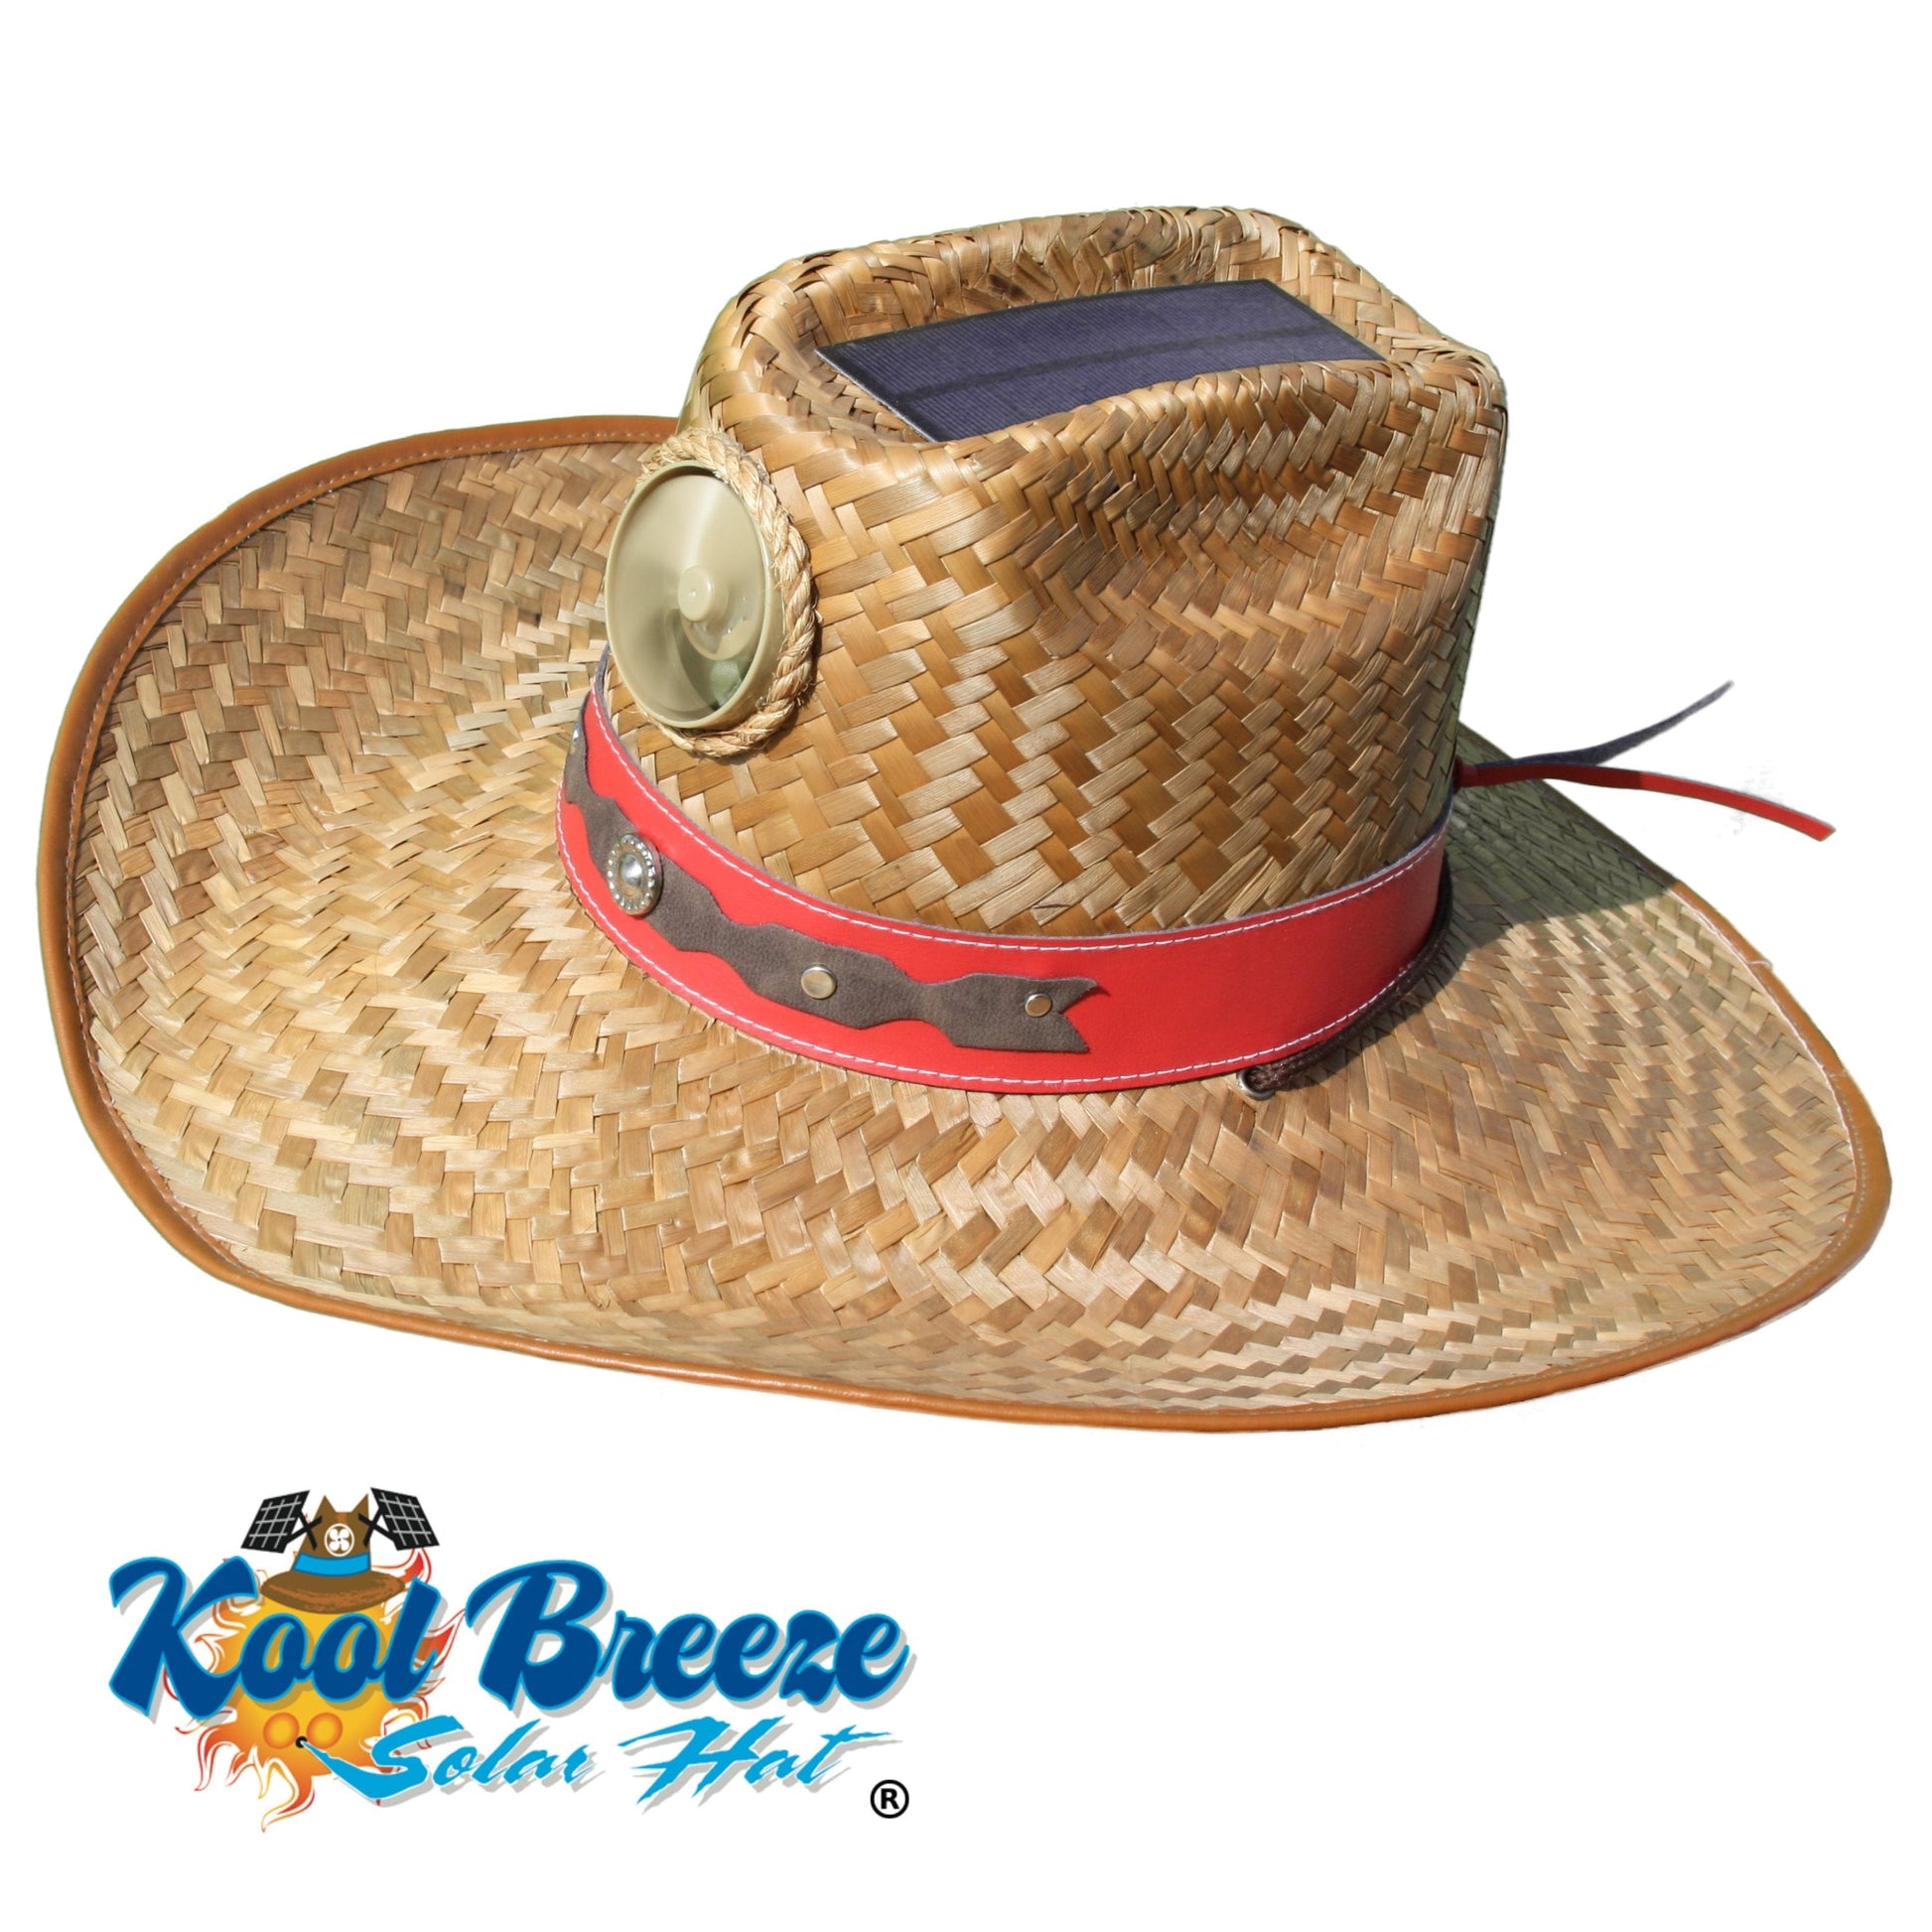 Kool Breeze Solar Cowgirl Straw Hat (Band) – Kool Breeze Solar Hats